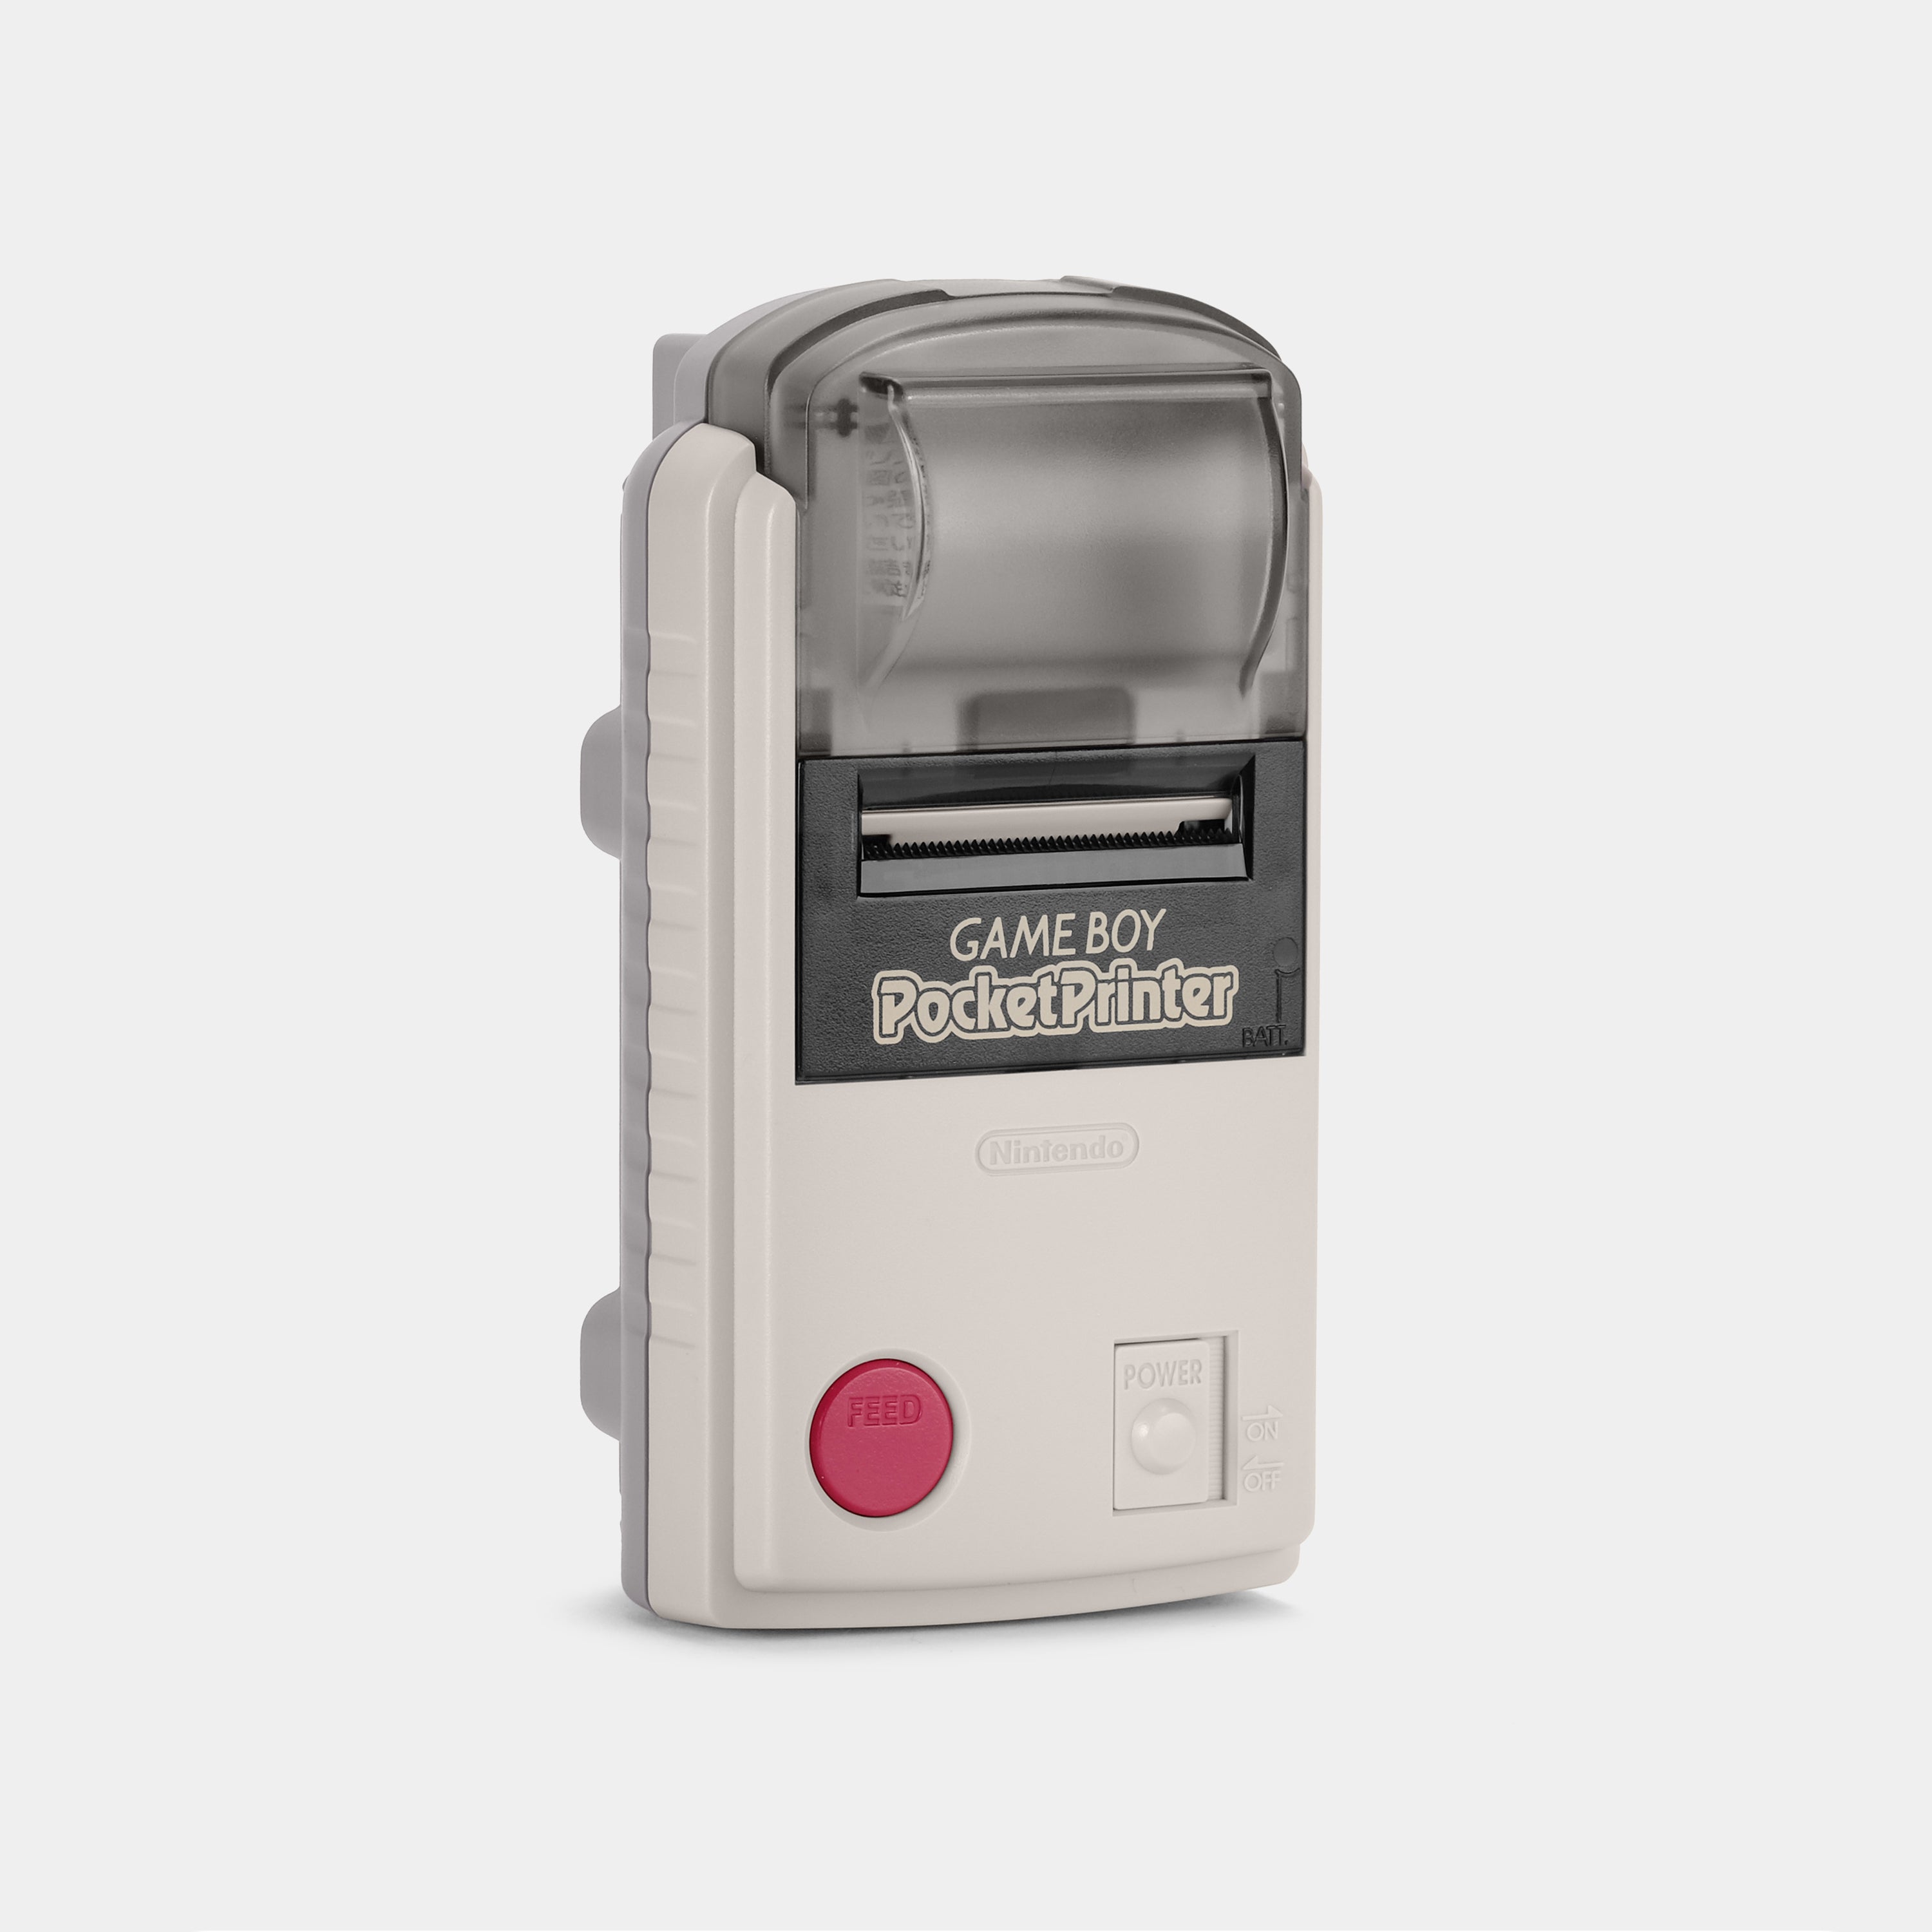 Game Boy Pocket Printer (Japanese)